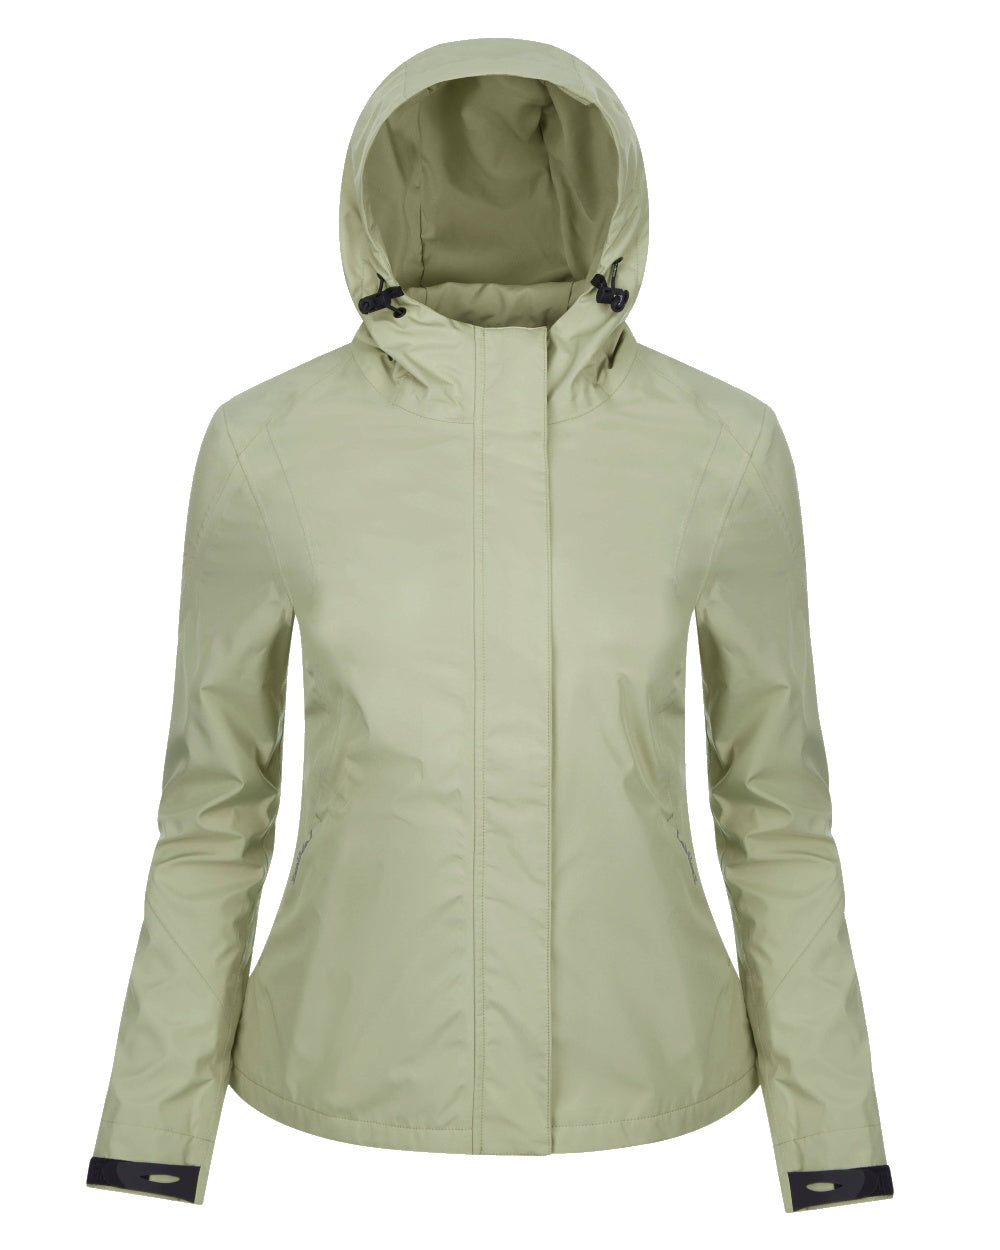 Fern coloured LeMieux Isla Short Waterproof Jacket on white background 